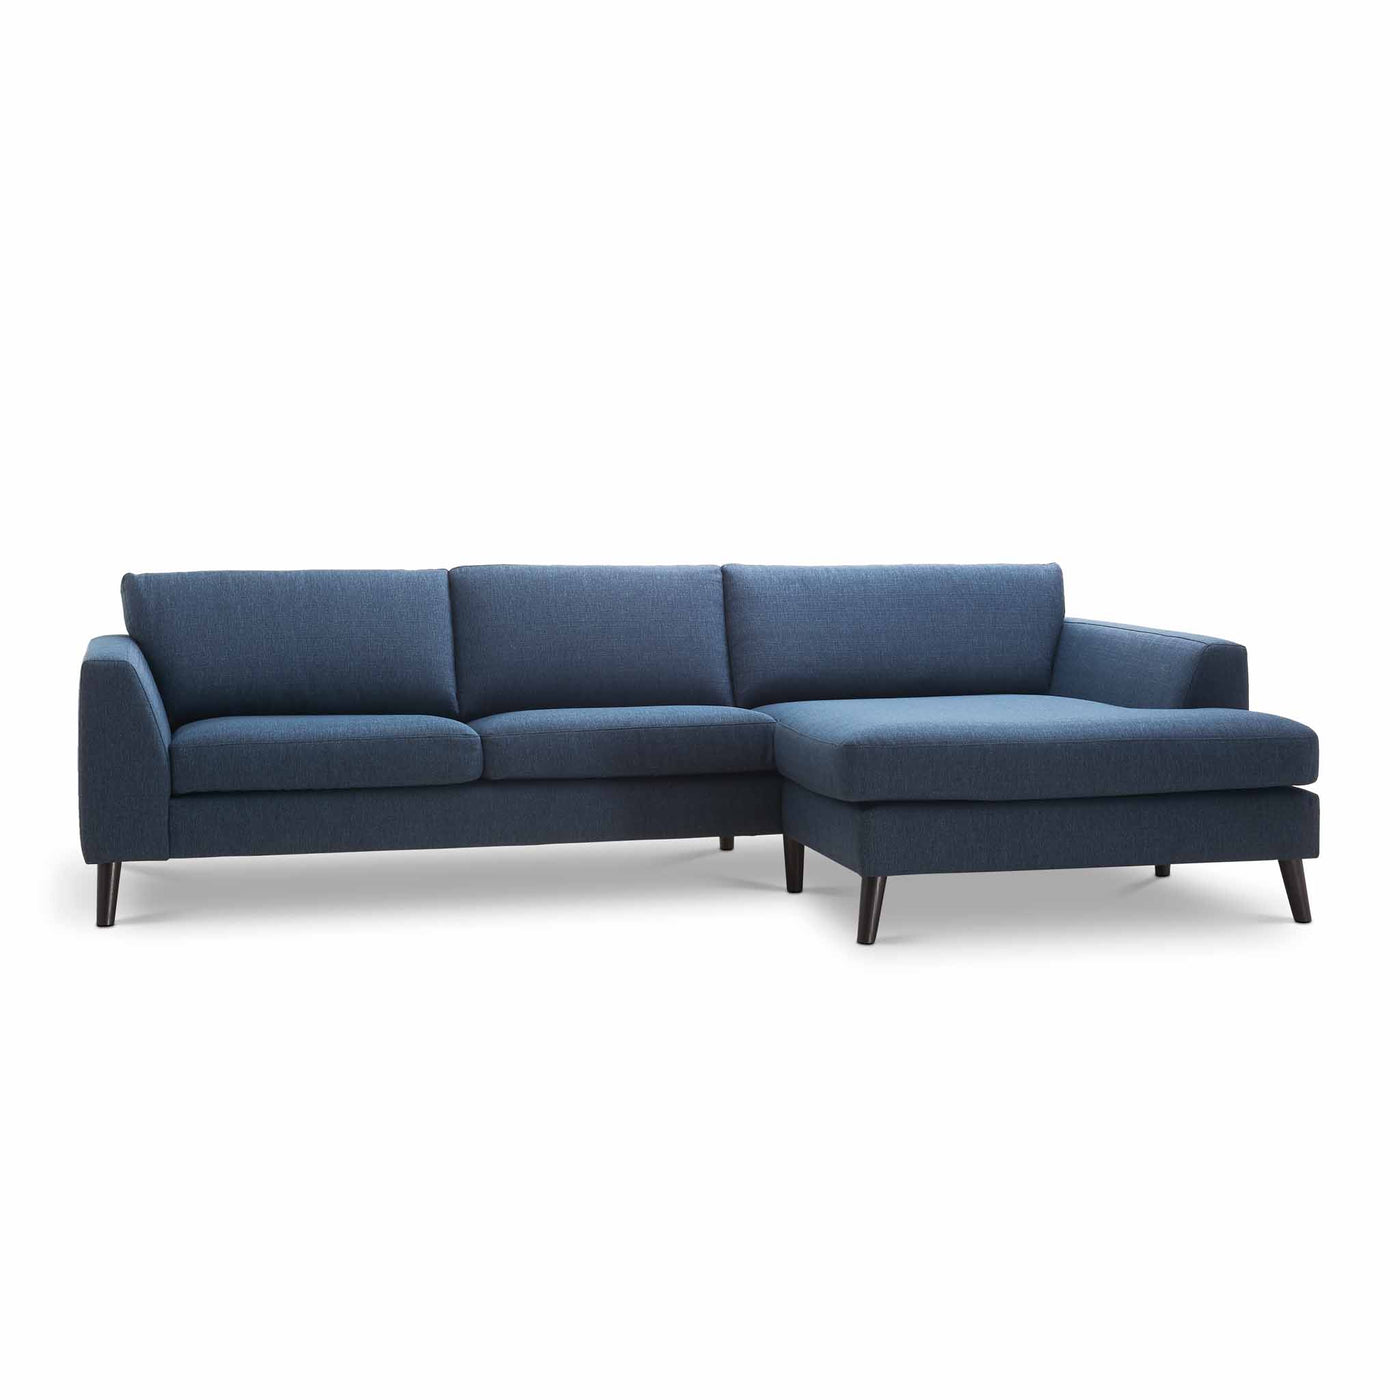 Livo chaiselong sofa i blå stof med sorte træben fra Vilmers